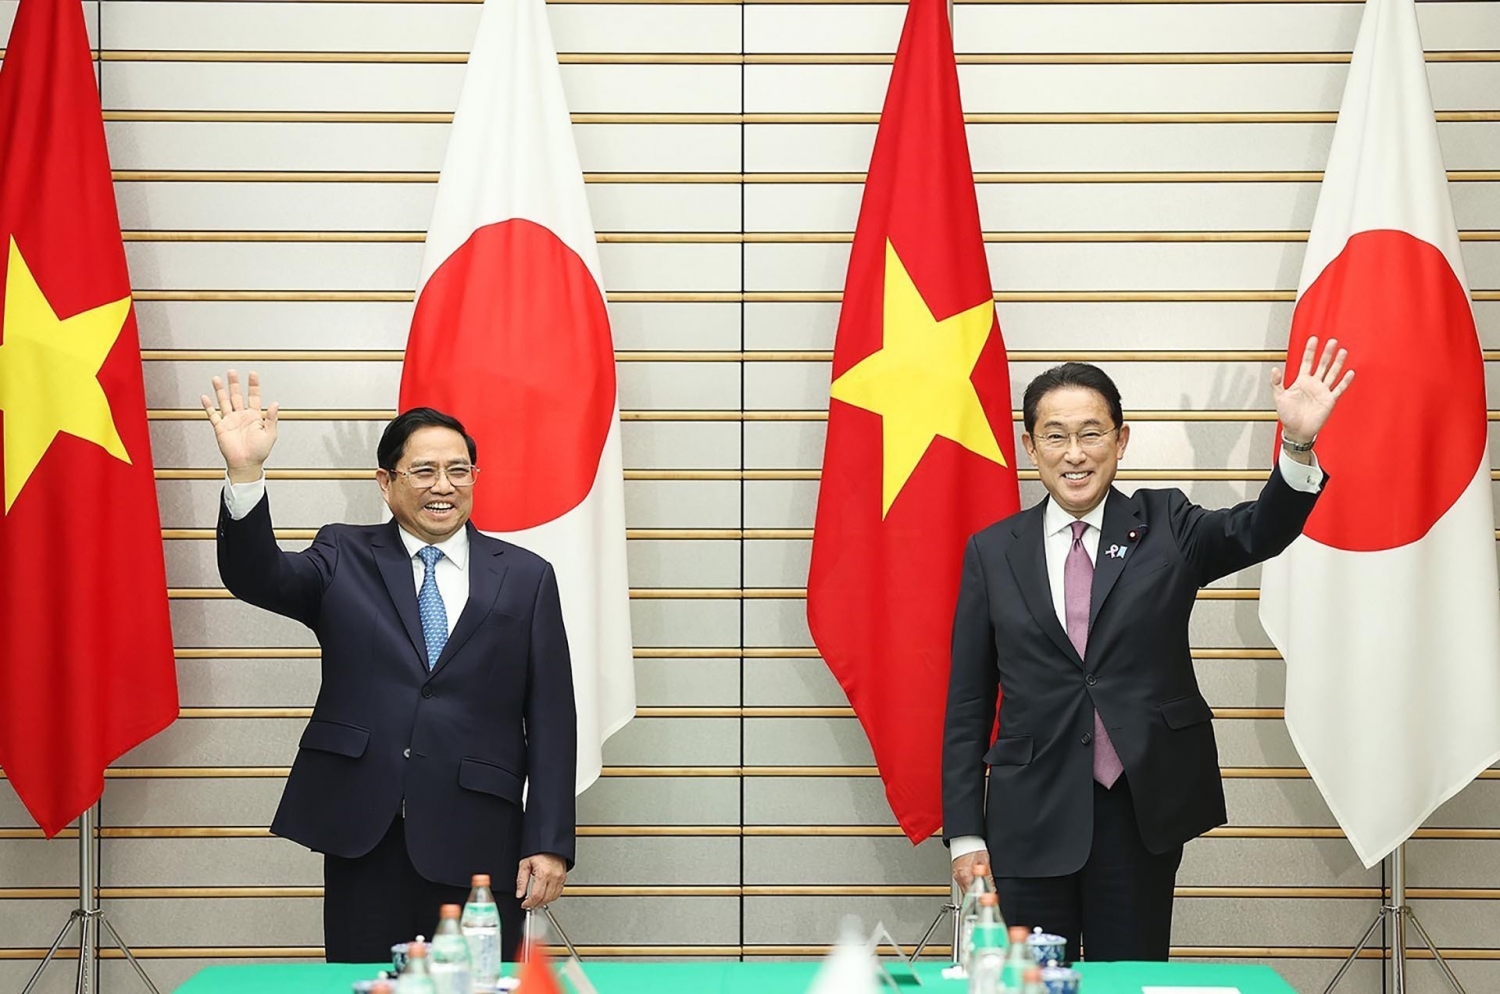 Thủ tướng Nhật Bản Kishida Fumio sẽ thăm chính thức Việt Nam từ ngày 30/4 - 01/5/2022